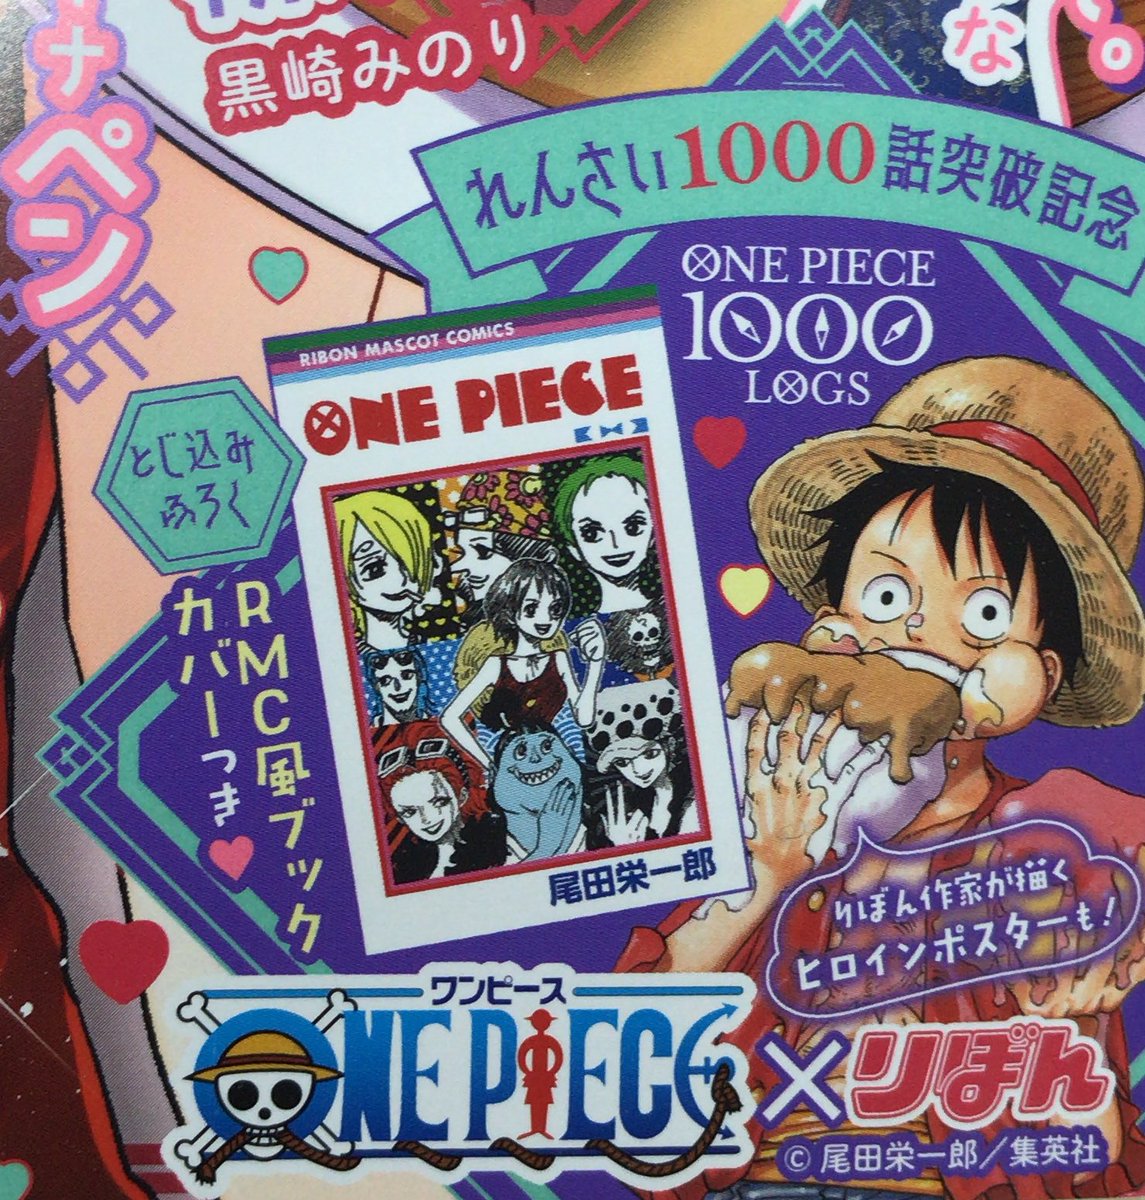 One Piece スタッフ 公式 Officialさんの人気ツイート 古い順 ついふぁん